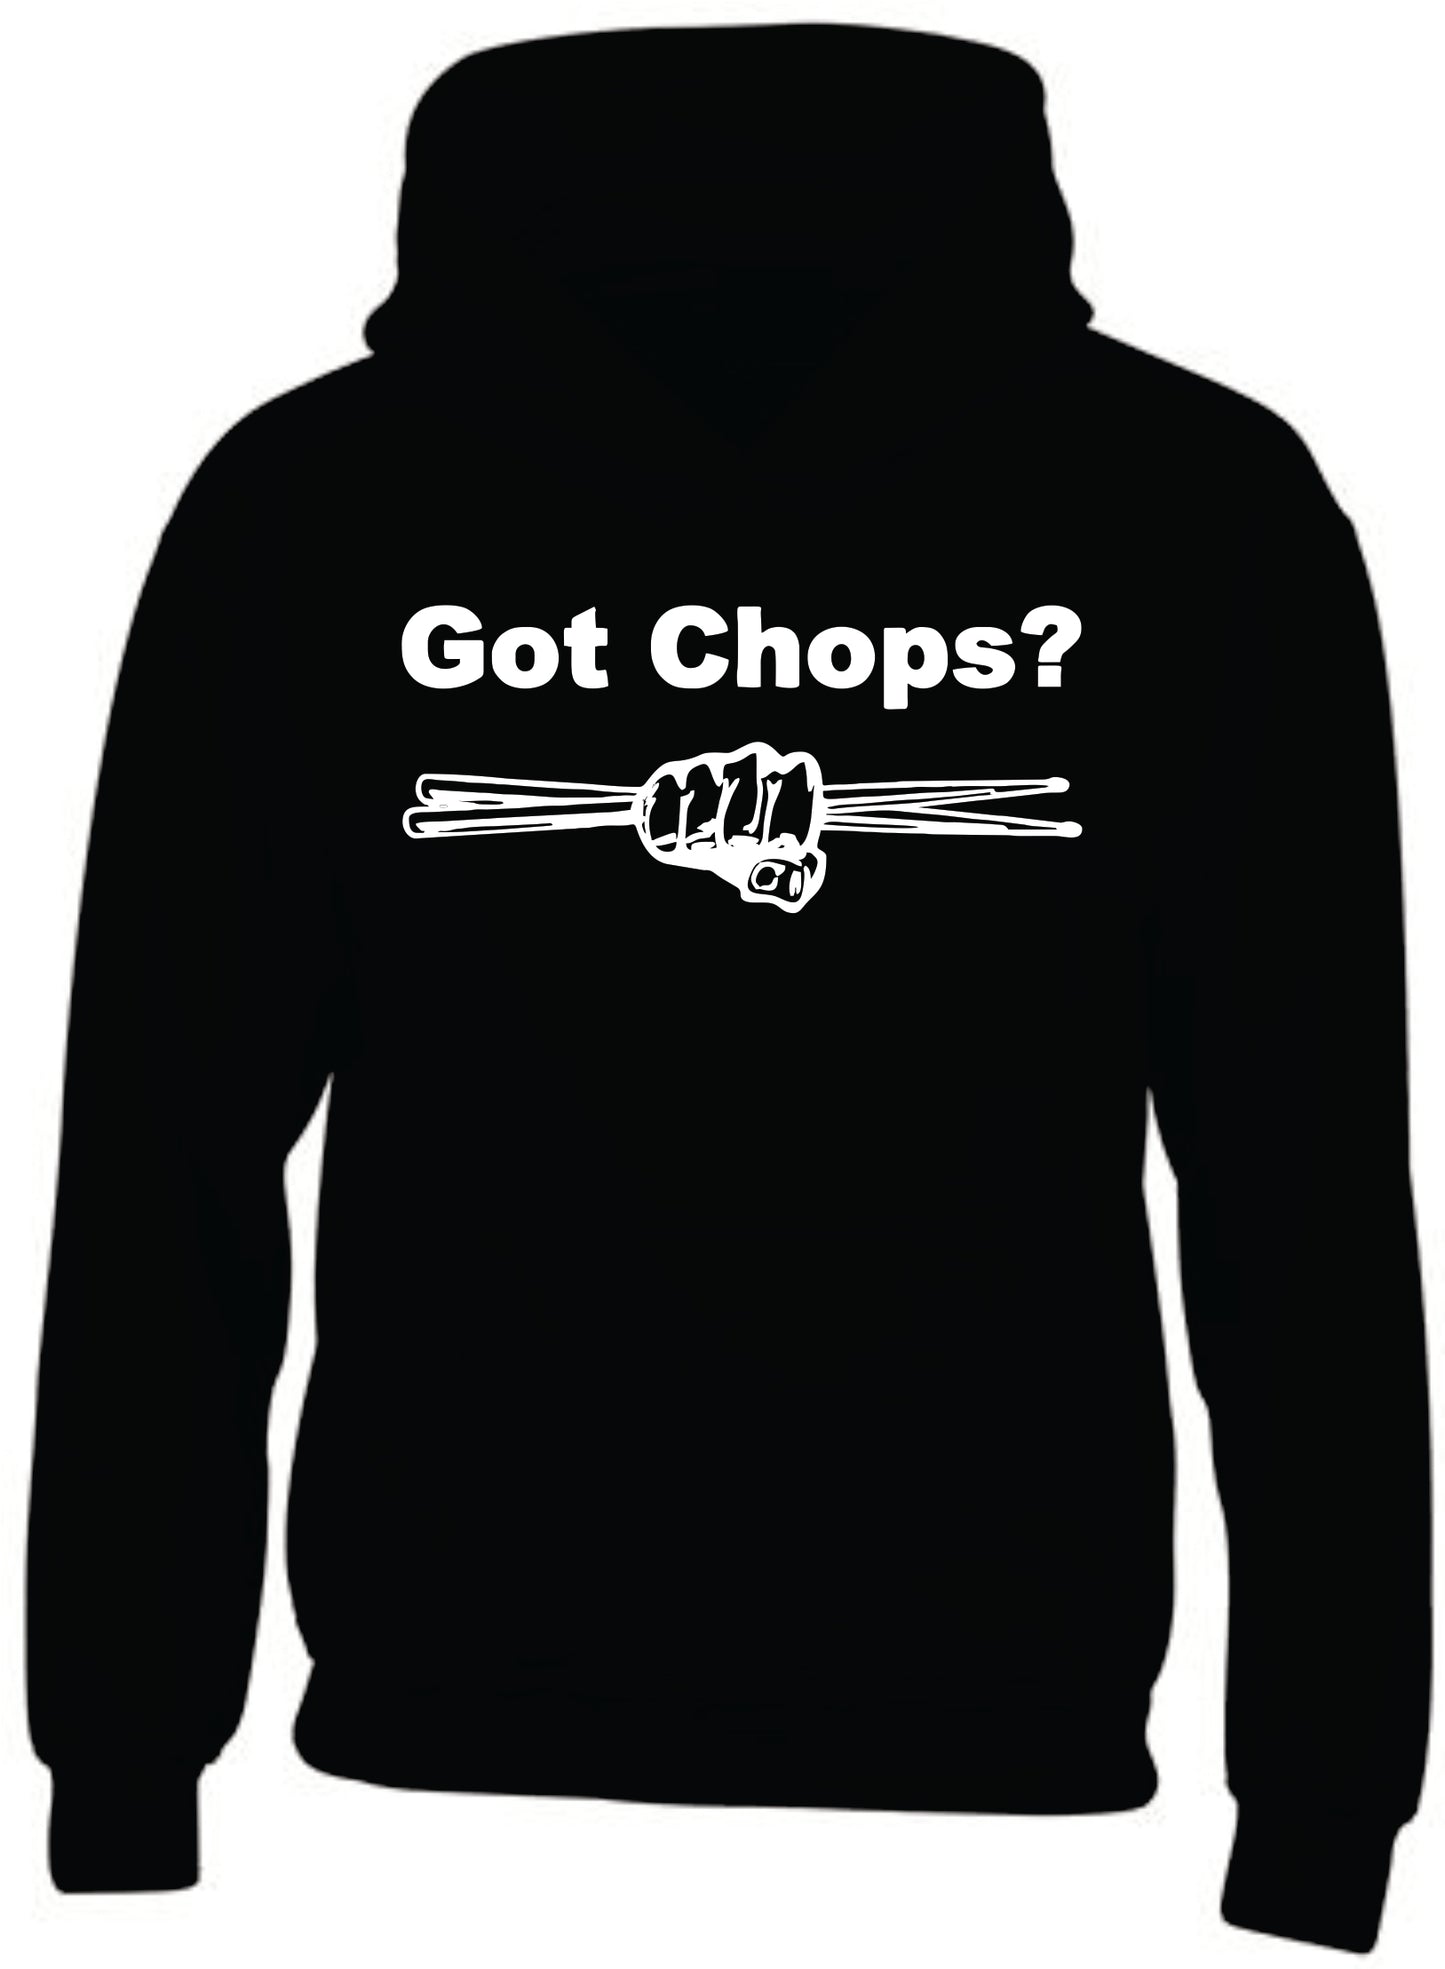 "Got Chops" Black Hoodie